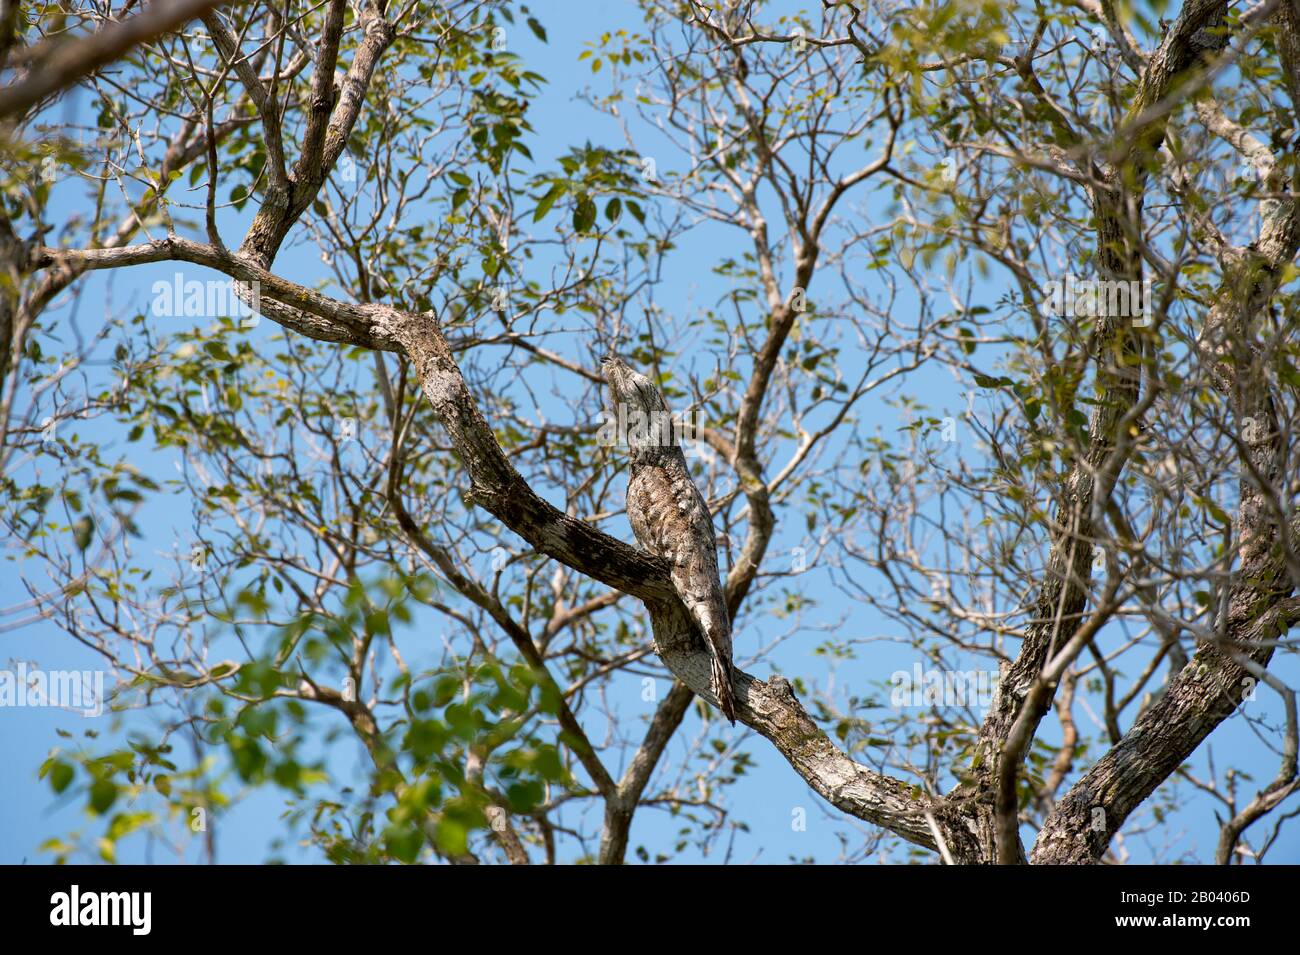 Un gran potoo (Nyctibius grandis) encaramado en un árbol cerca de la Logia Pouso Alegre en el norte del Pantanal, Mato Grosso provincia de Brasil. Foto de stock